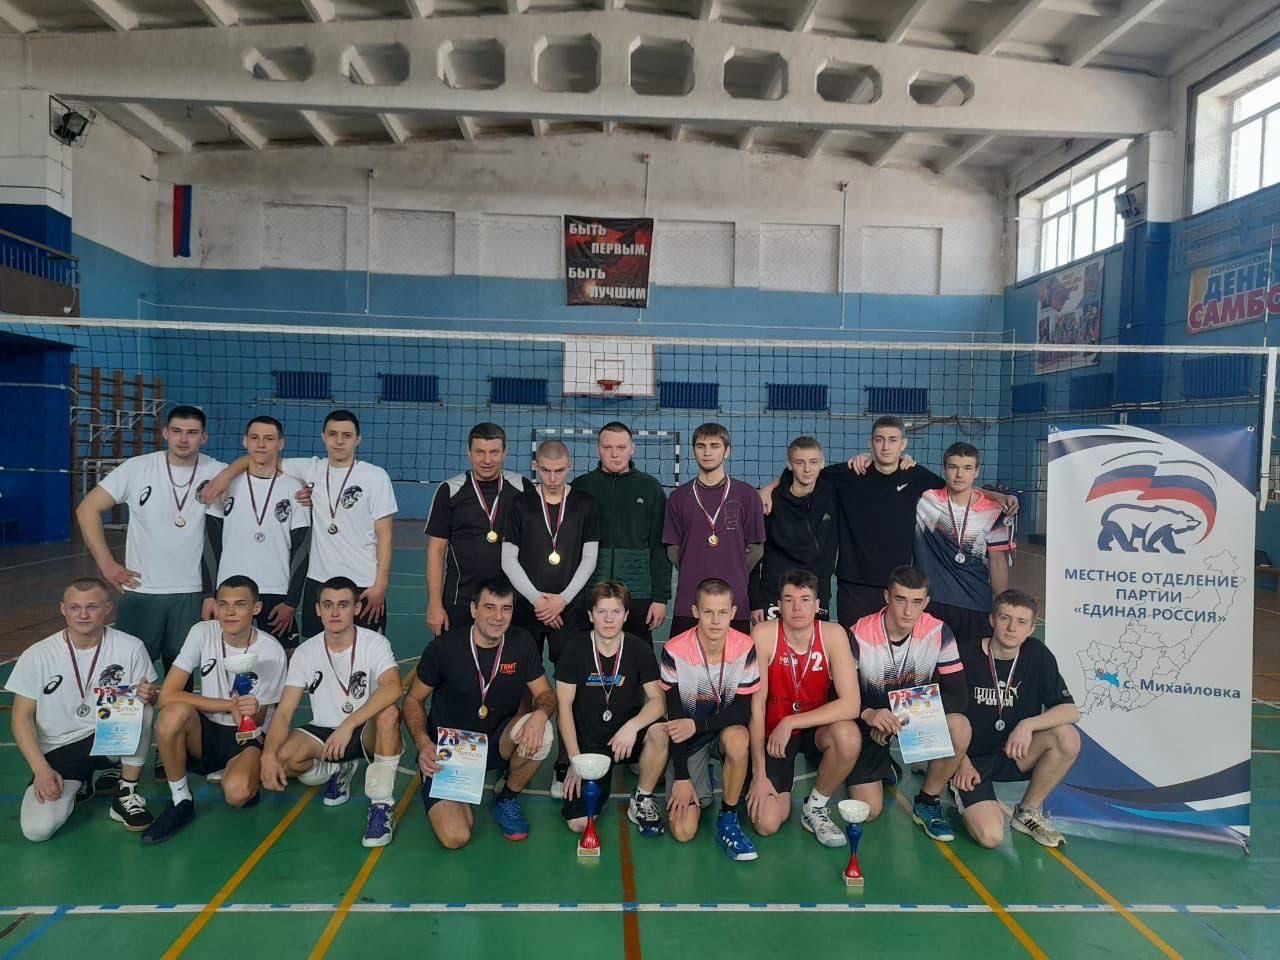 Турниры по волейболу и дартс, посвященные Дню защитника Отечества, прошли в спортивной школе села Михайловка ⠀.